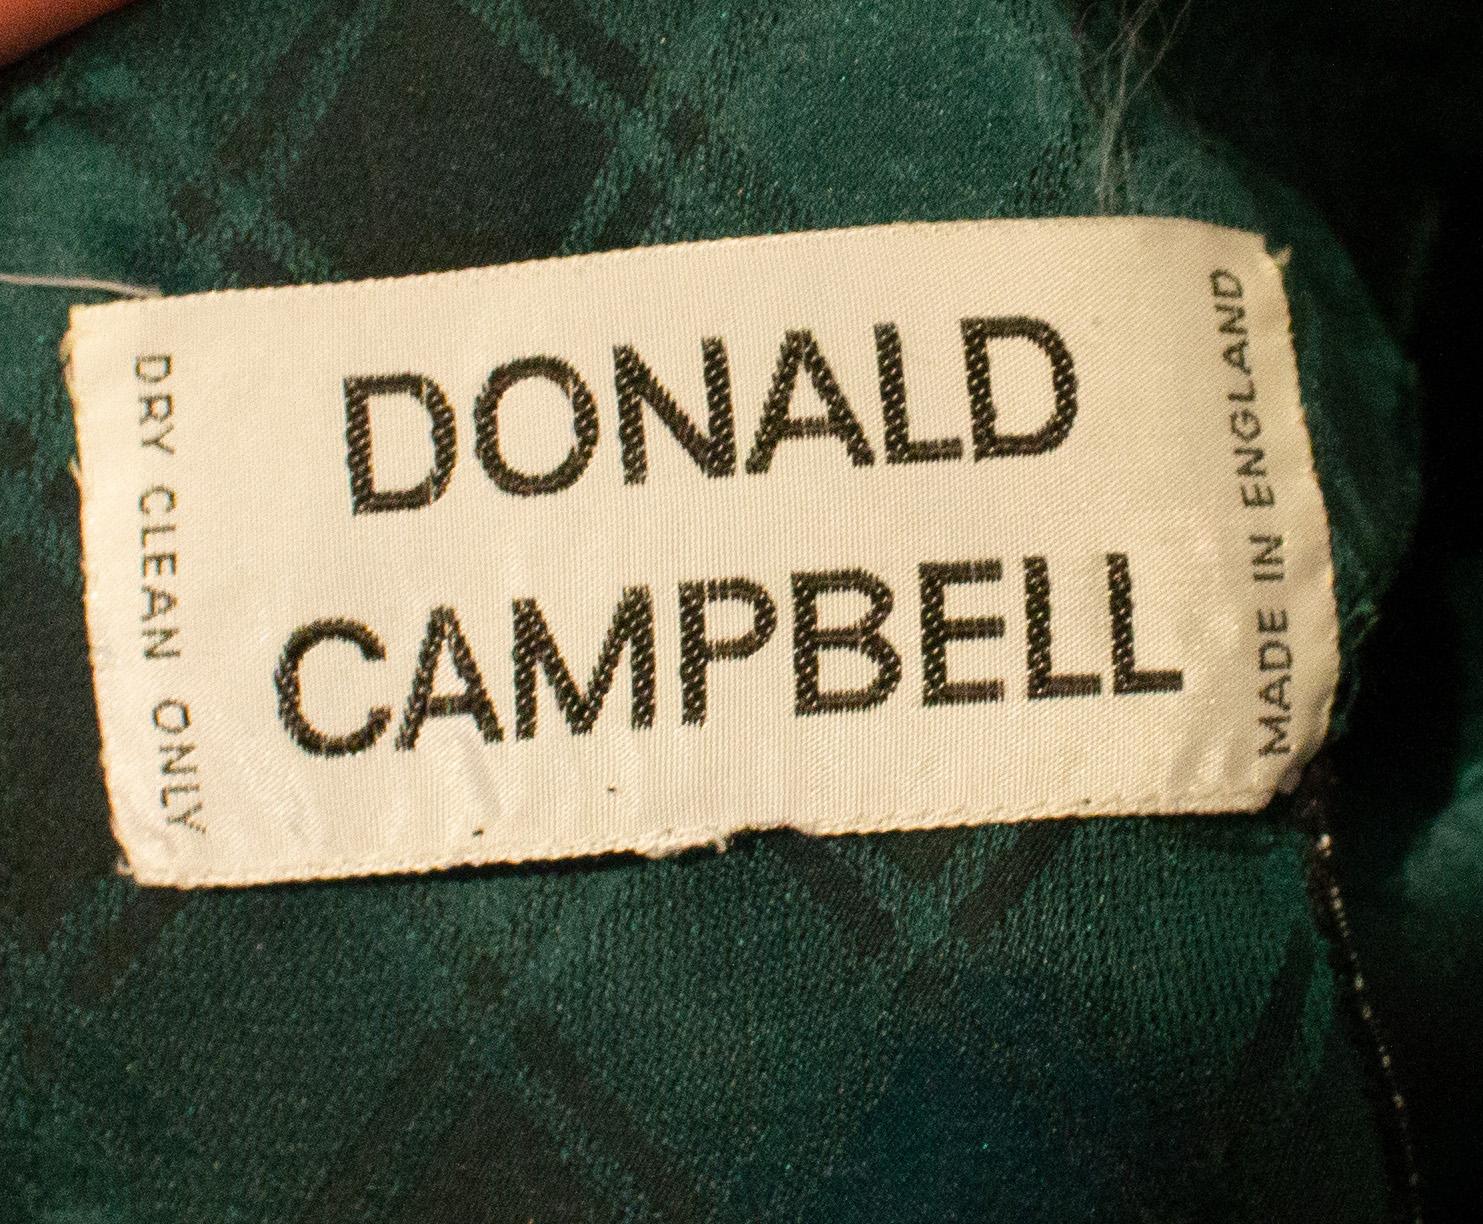 Une robe de soirée chic en soie de Donald Campbell.  La robe a un décolleté en V  avec des plis sous la poitrine. Il est doté d'une ouverture à boutons en tissu dans le dos, d'une ouverture zippée cachée dans le bas du dos et d'une fermeture à